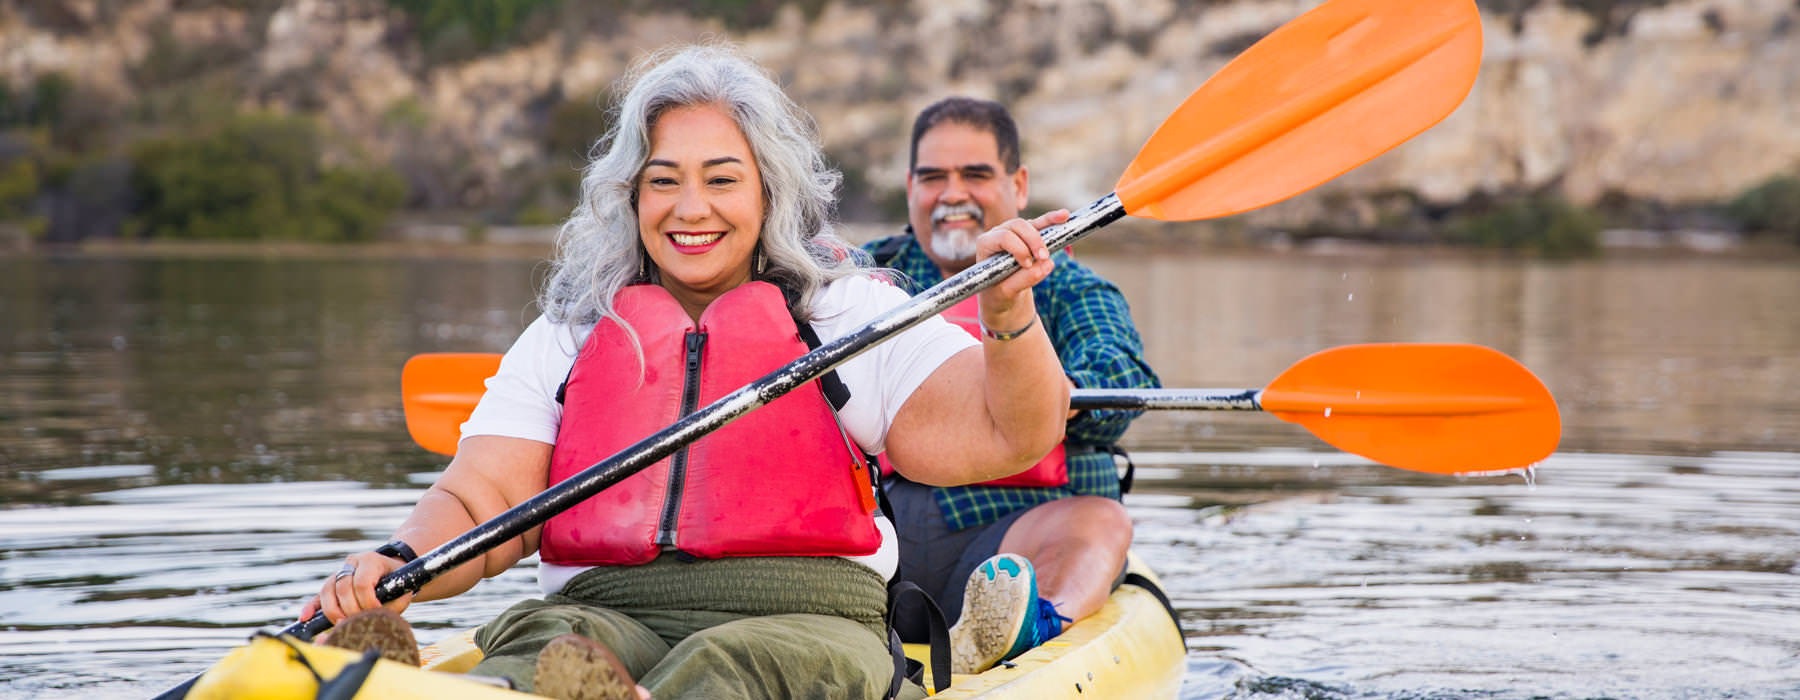 man and woman kayak on river